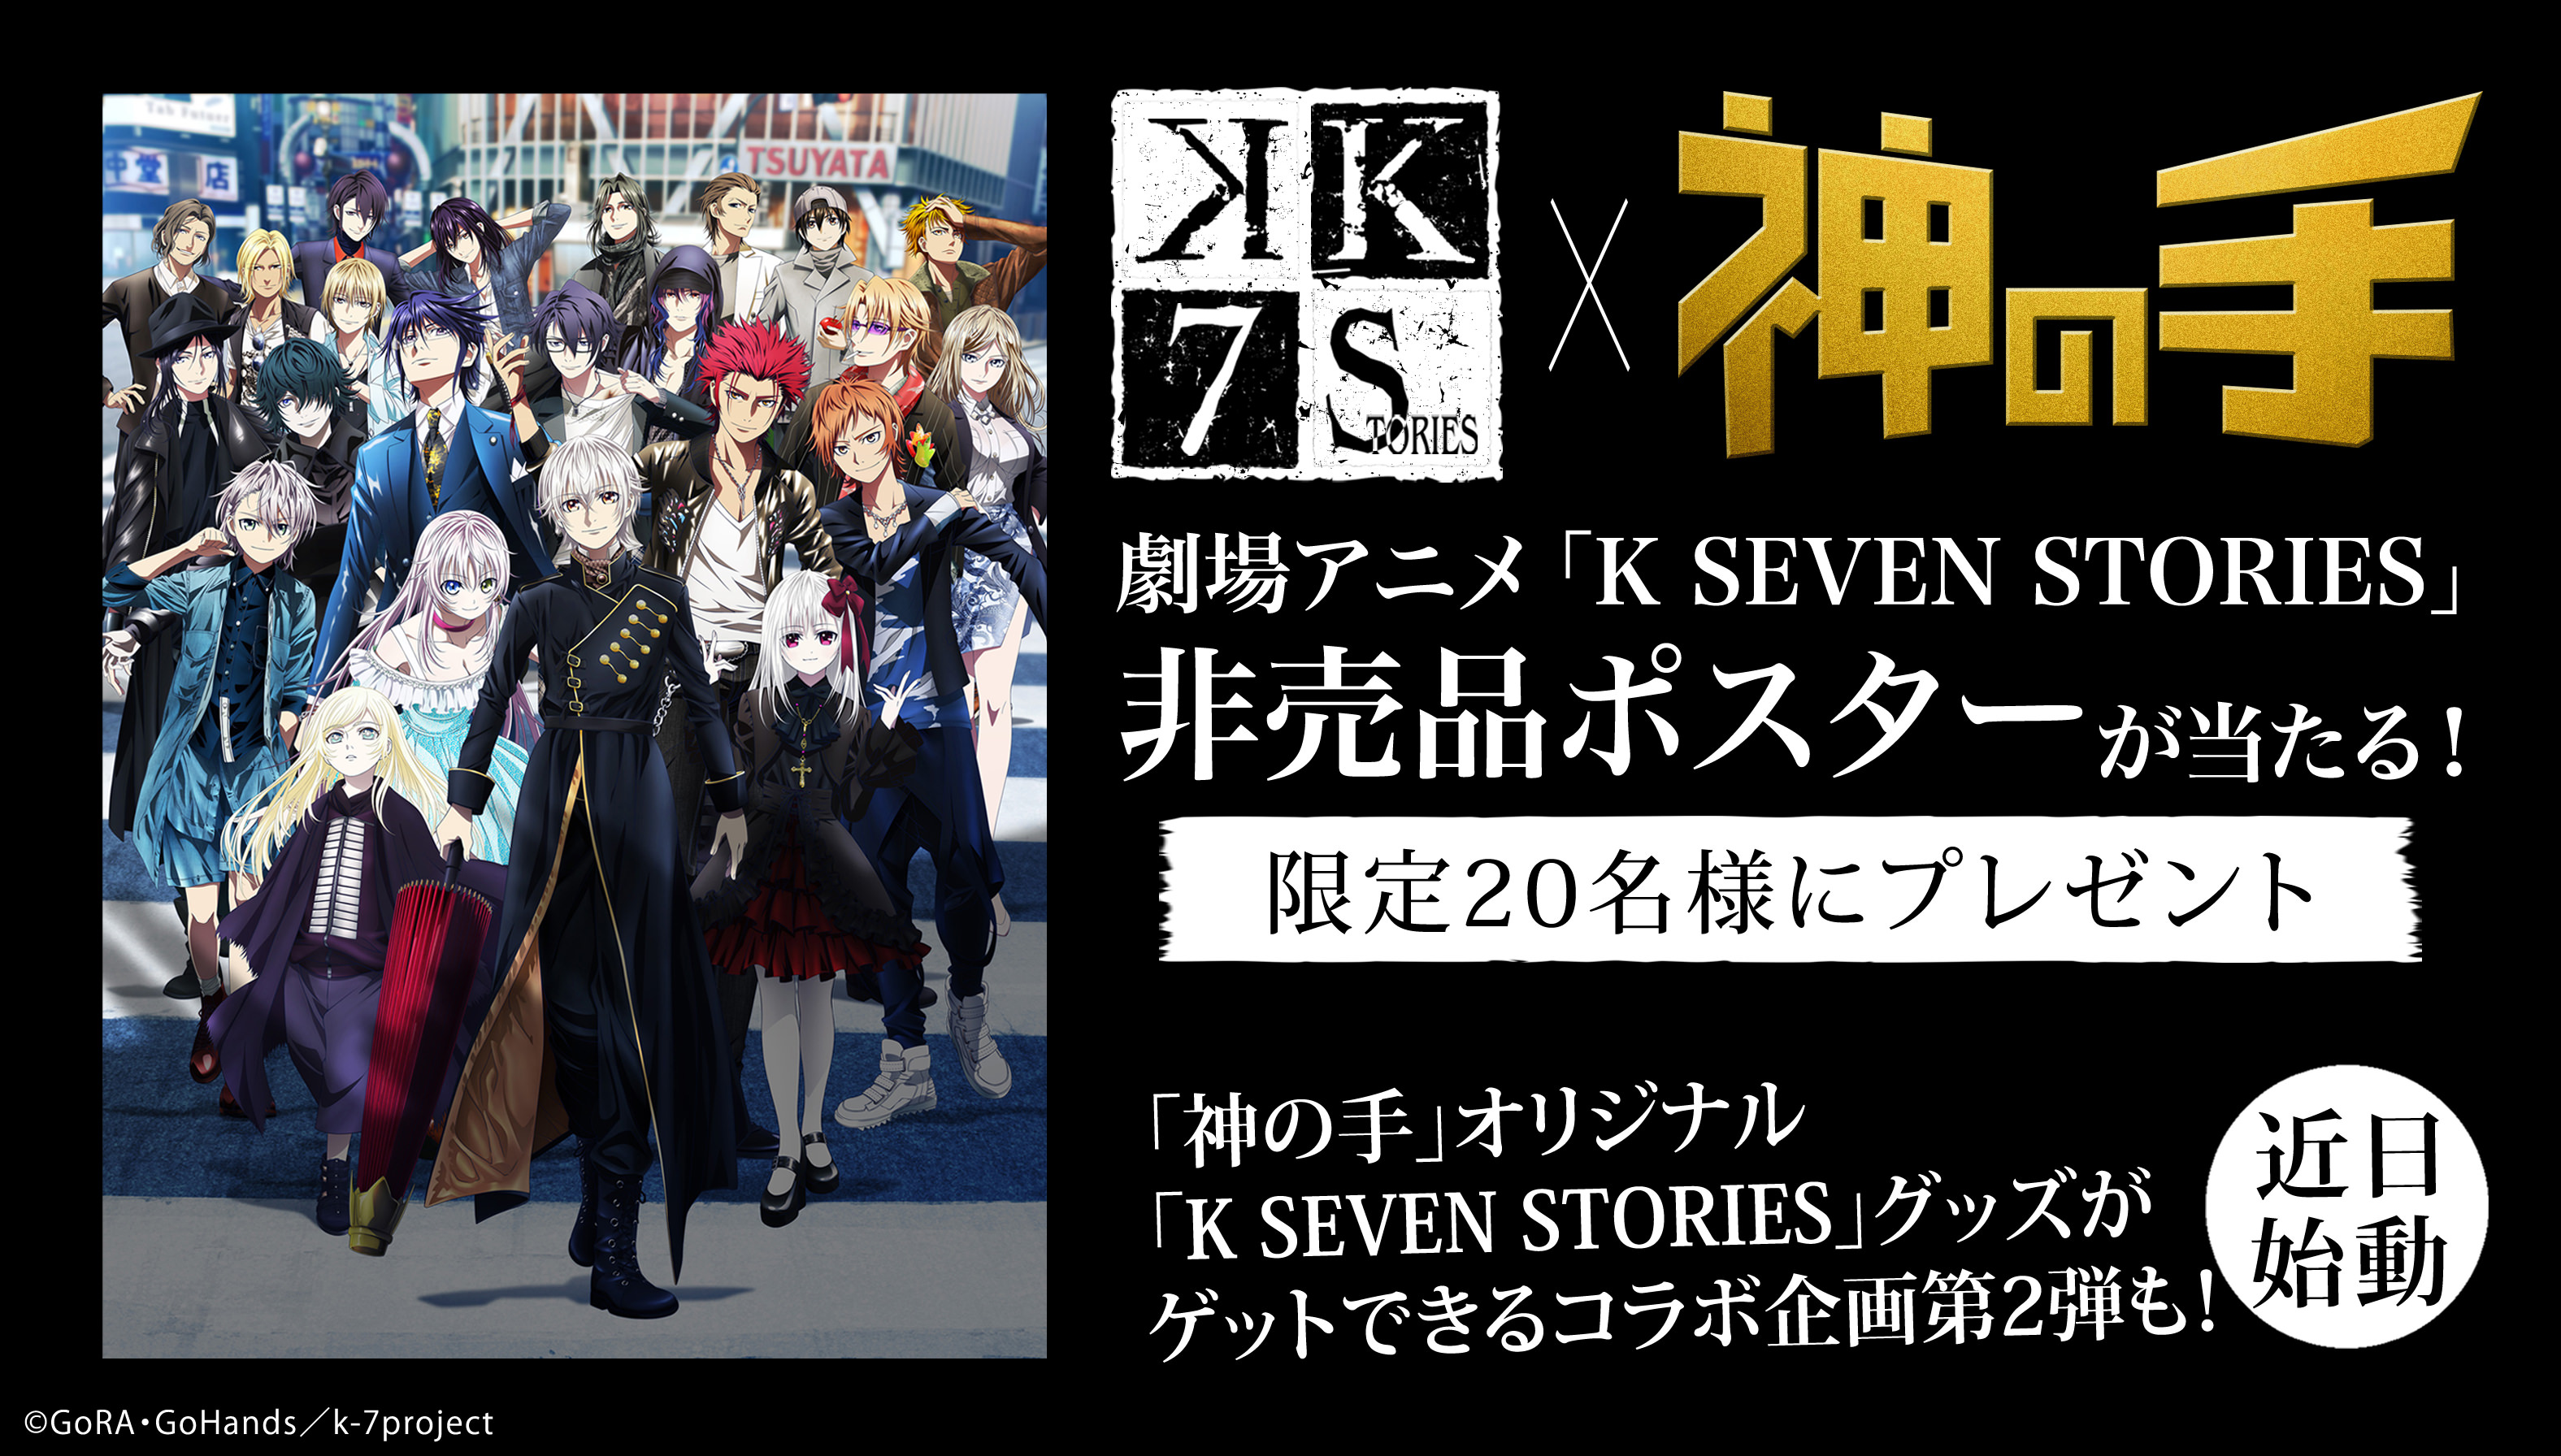 3Dスマホクレーンゲーム「神の手」×劇場アニメ「K SEVEN STORIES」コラボ